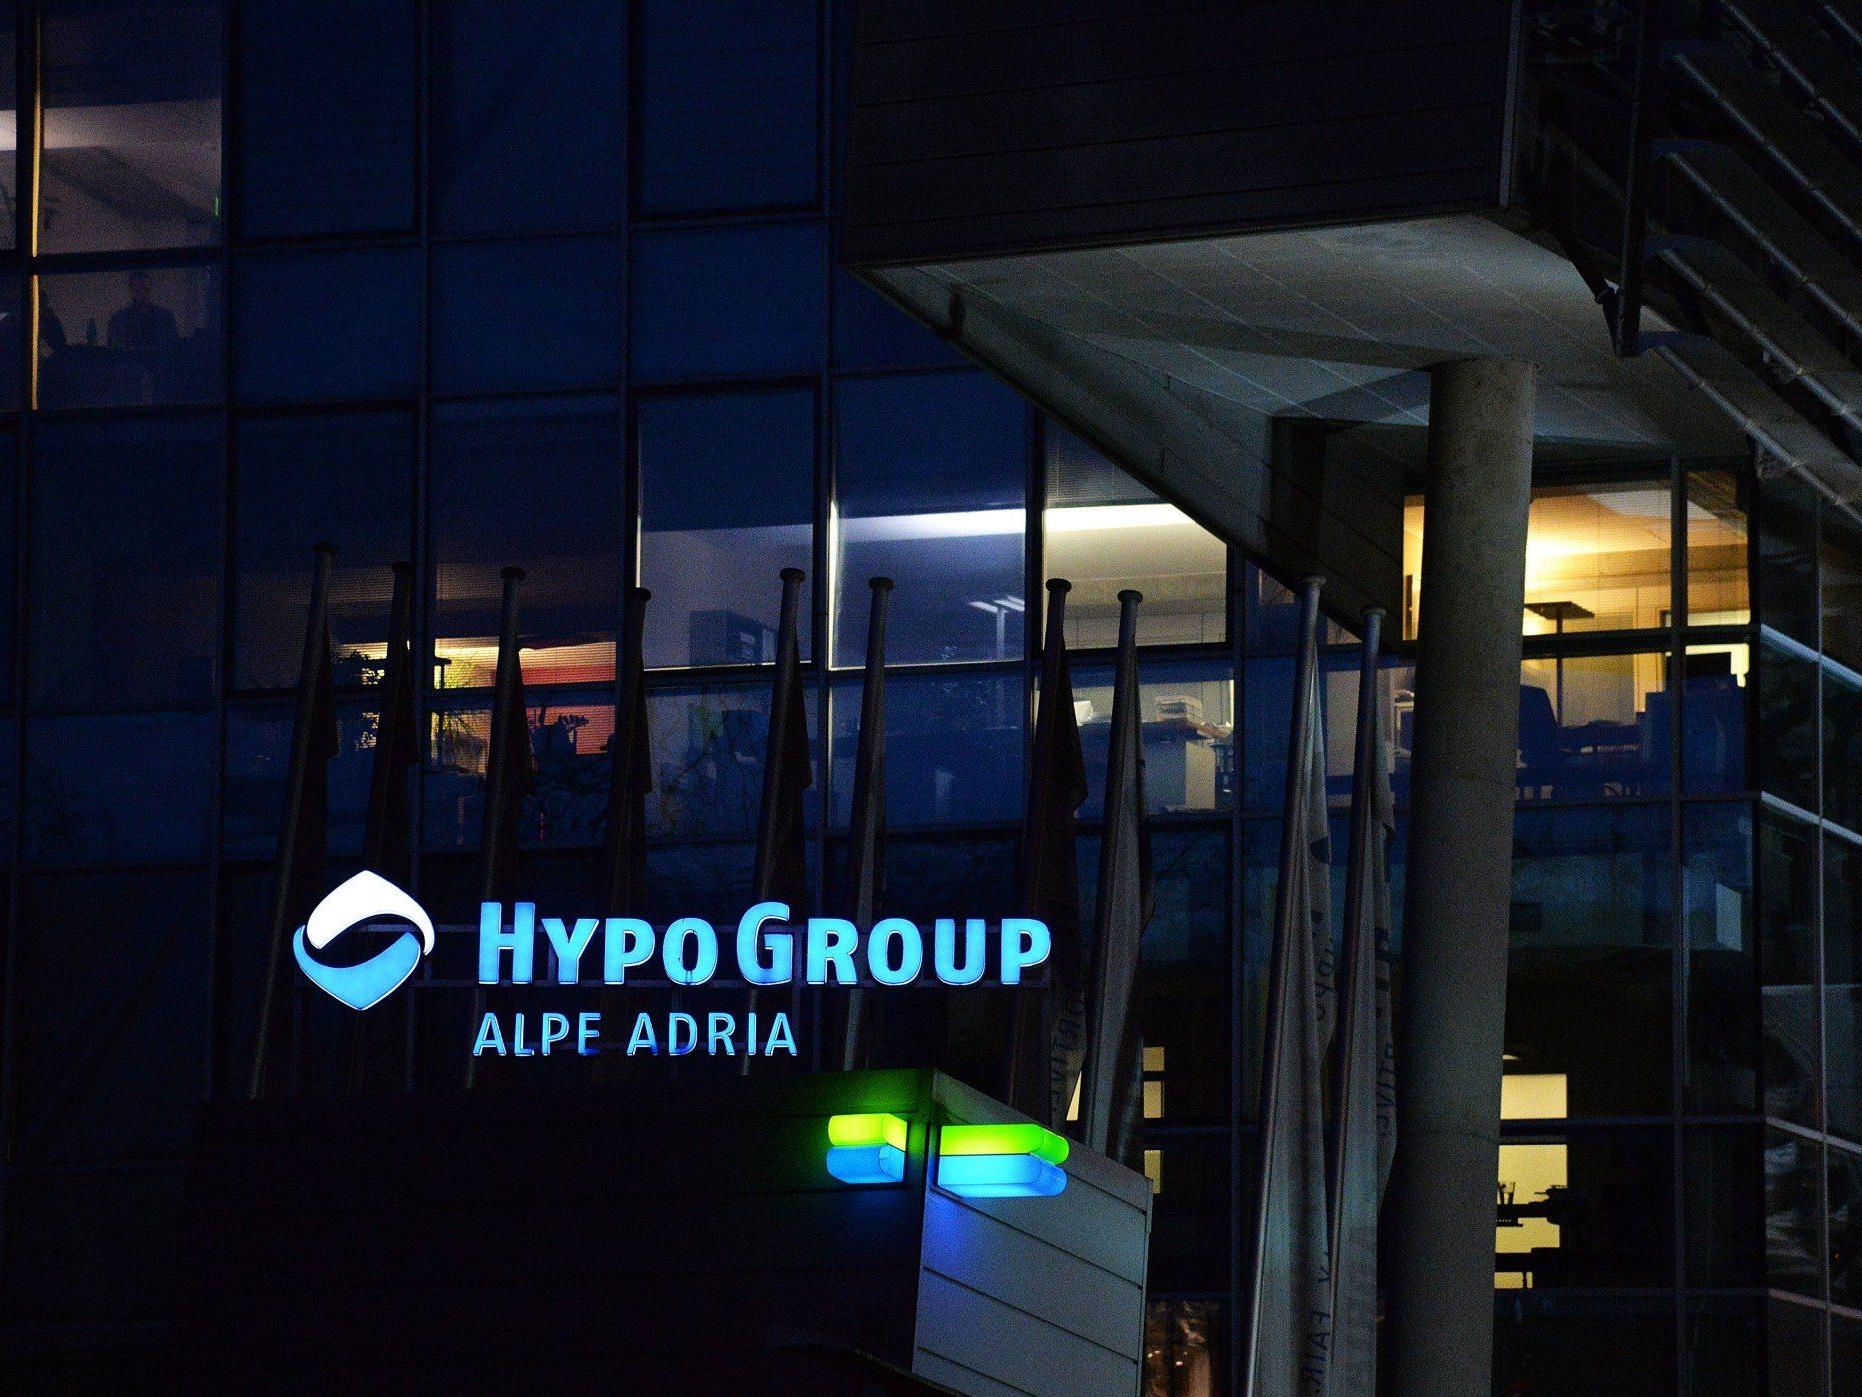 Führt der Abwicklungsplan für die Hypo Alpe Adria direkt zu einem Sparpaket?